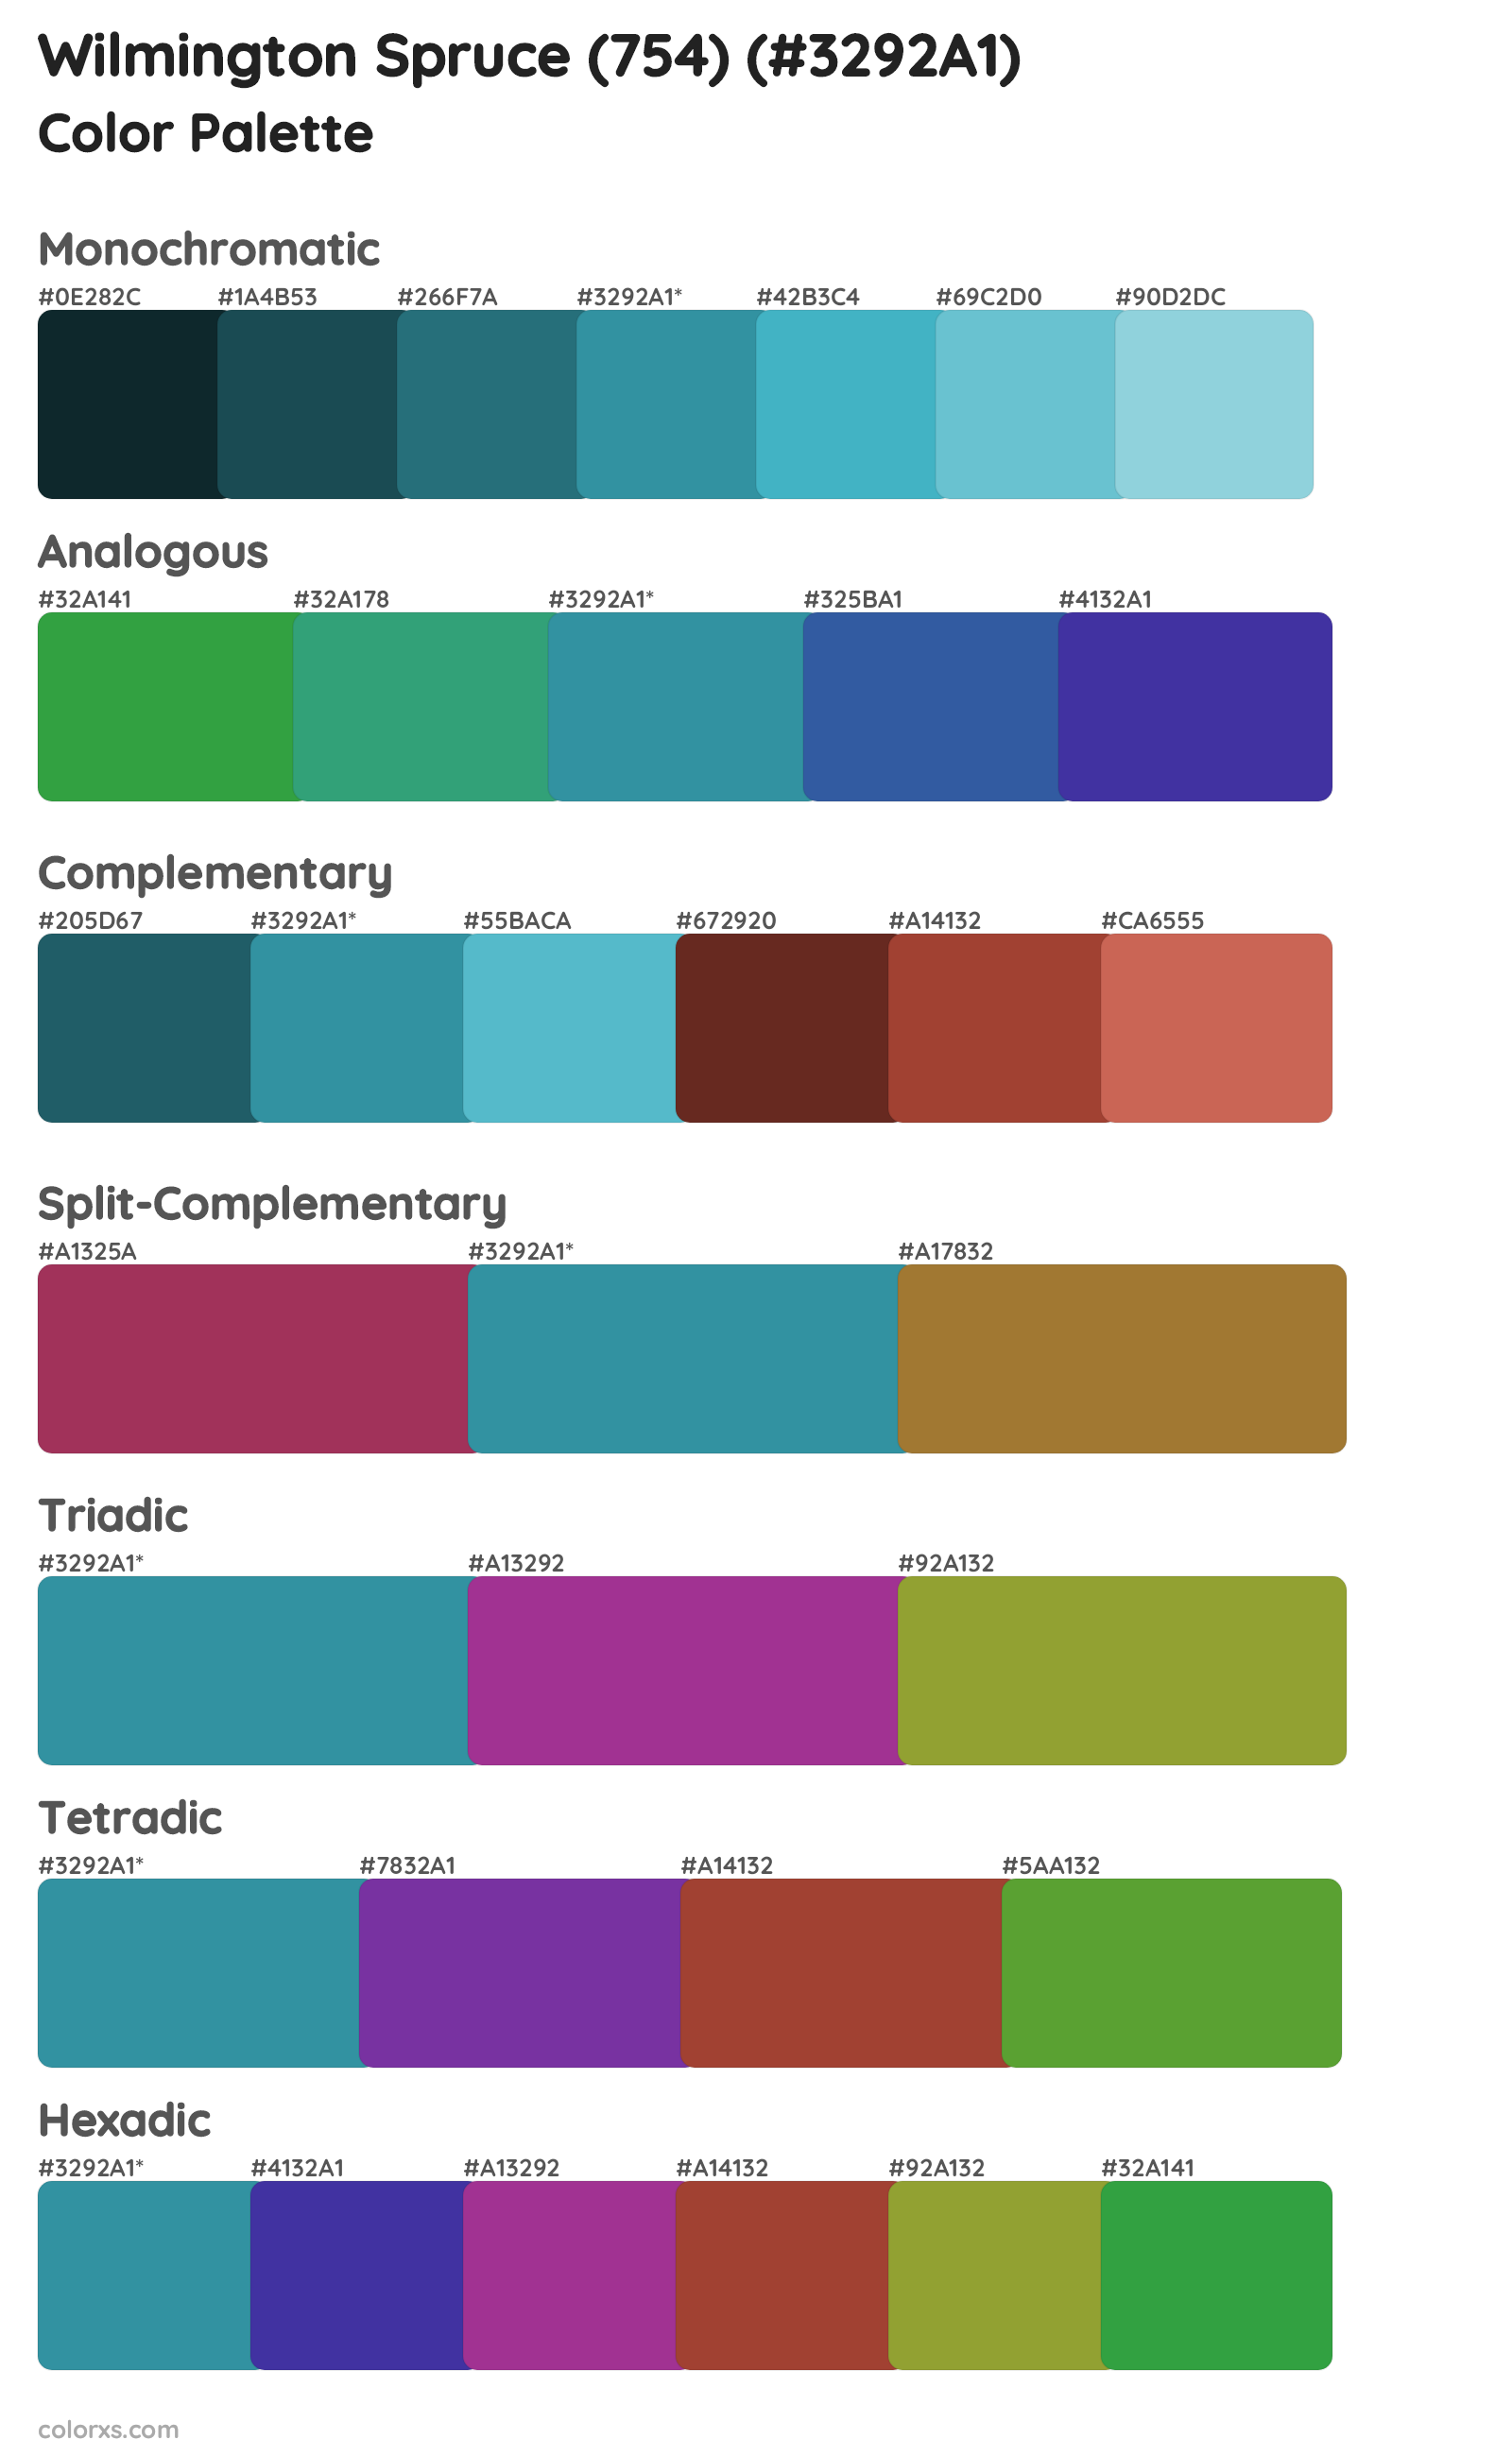 Wilmington Spruce (754) Color Scheme Palettes